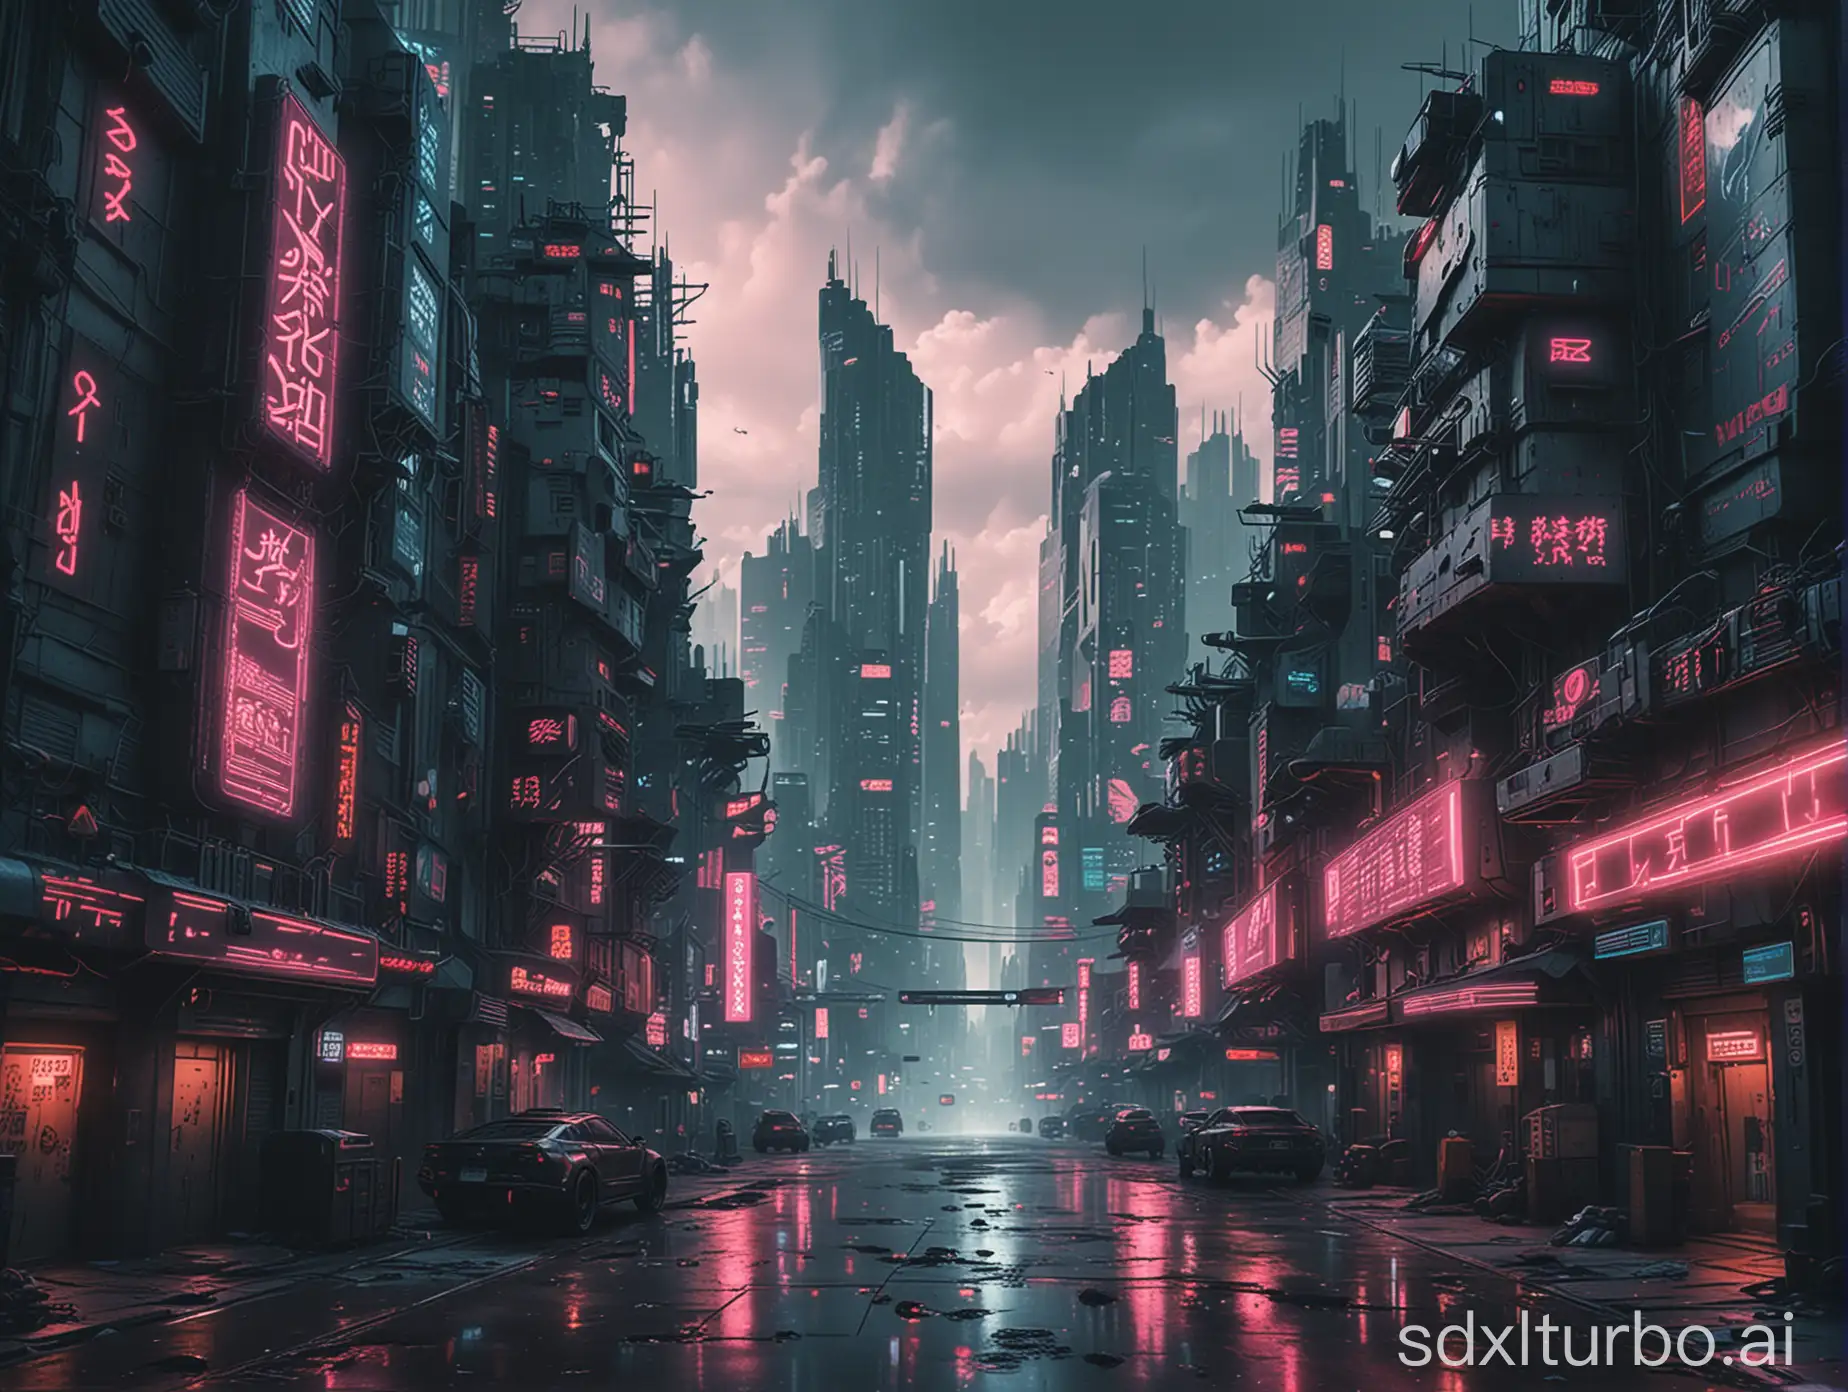 cyberpunk style city image